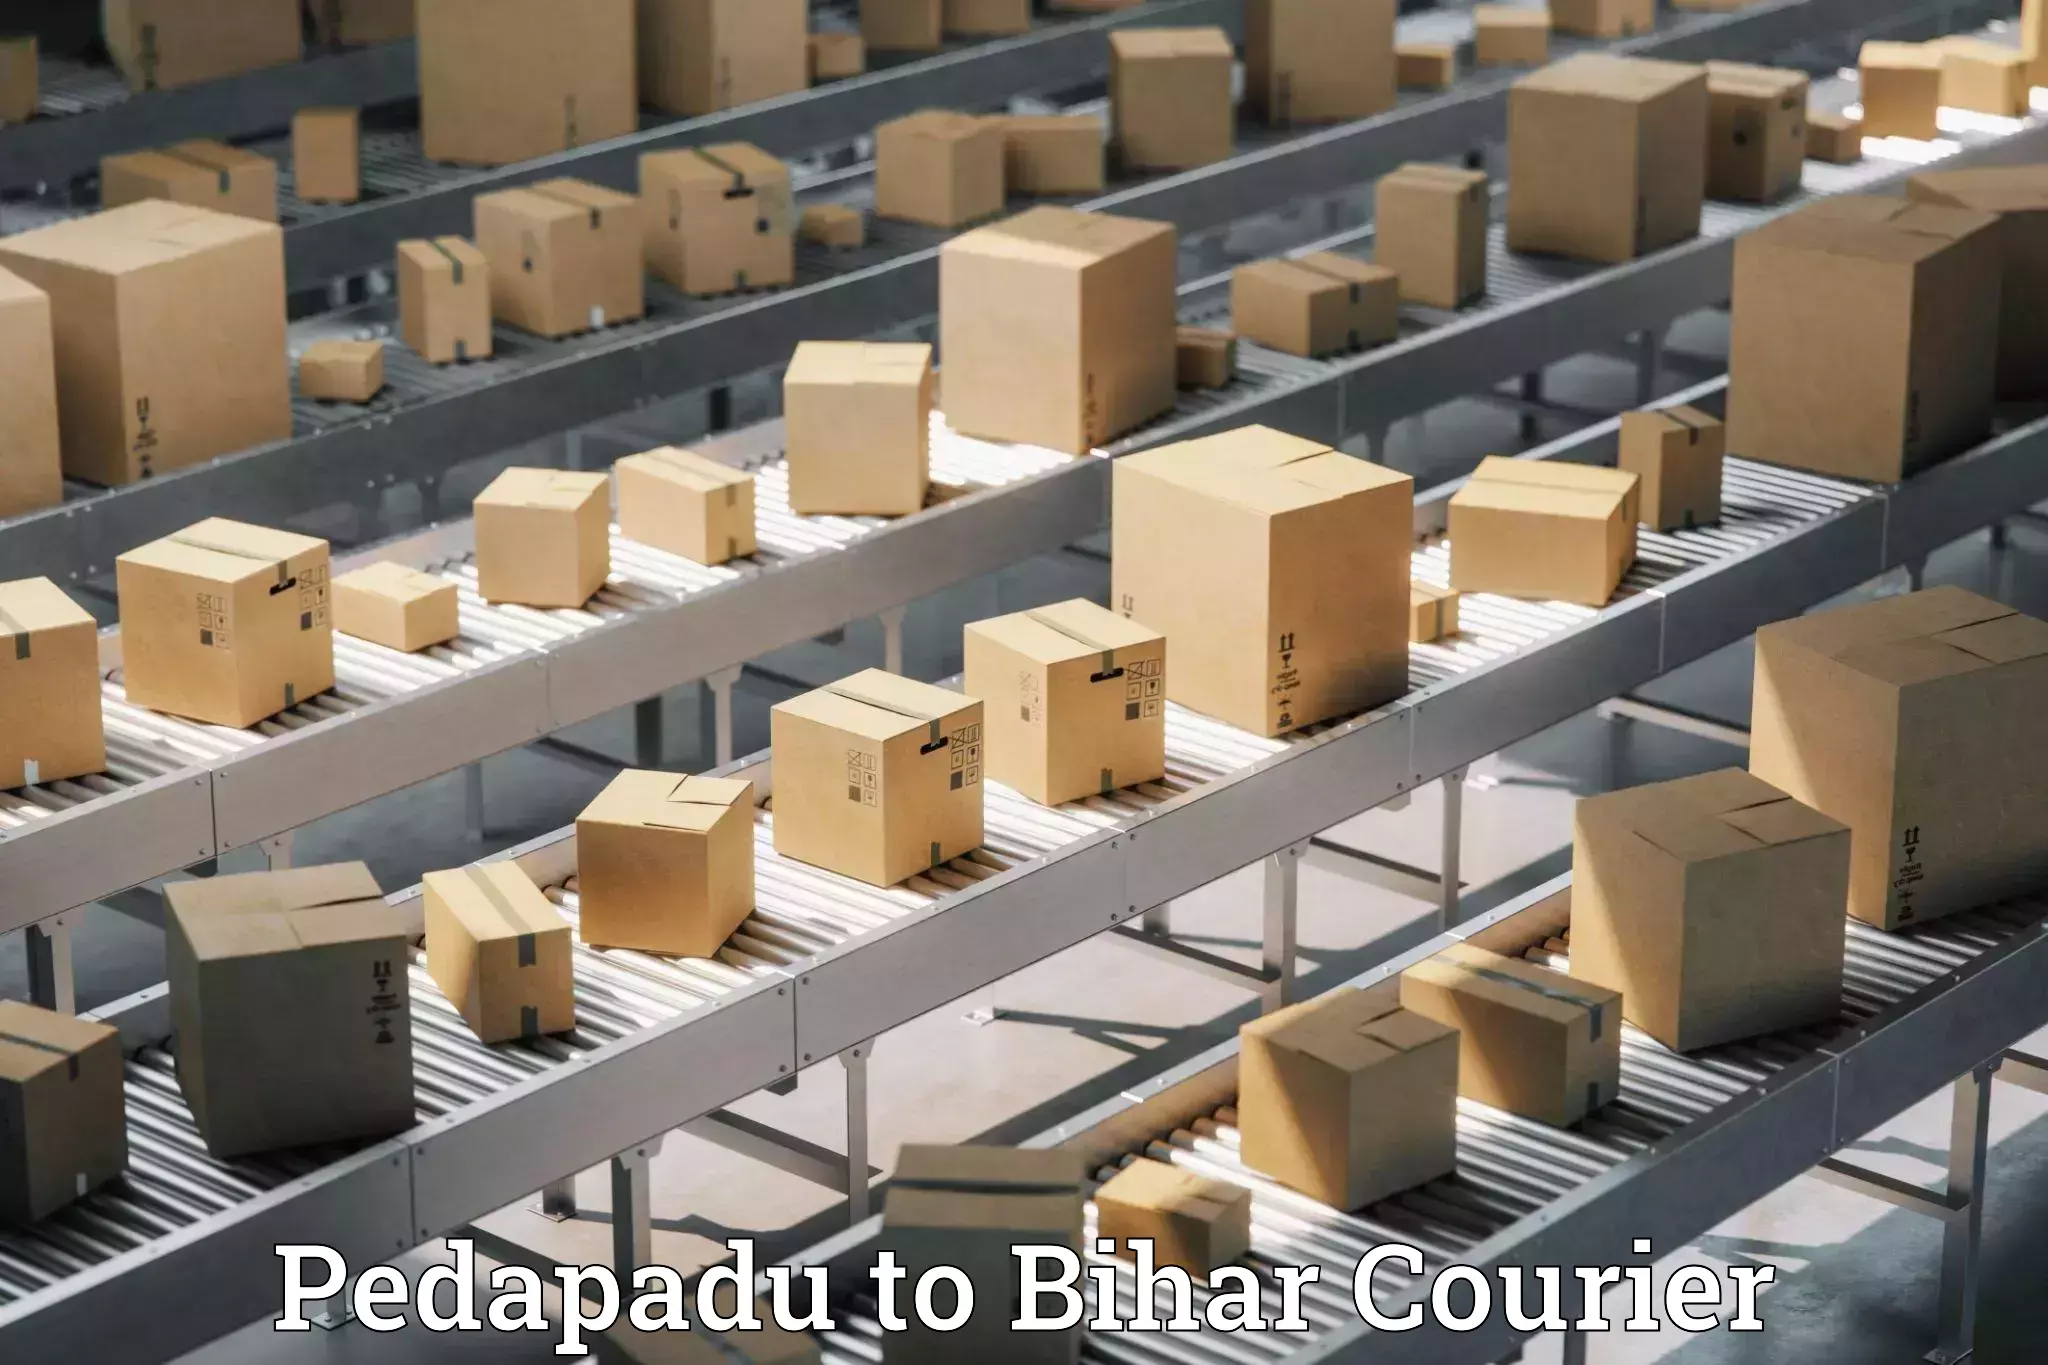 Logistics service provider Pedapadu to Bihar